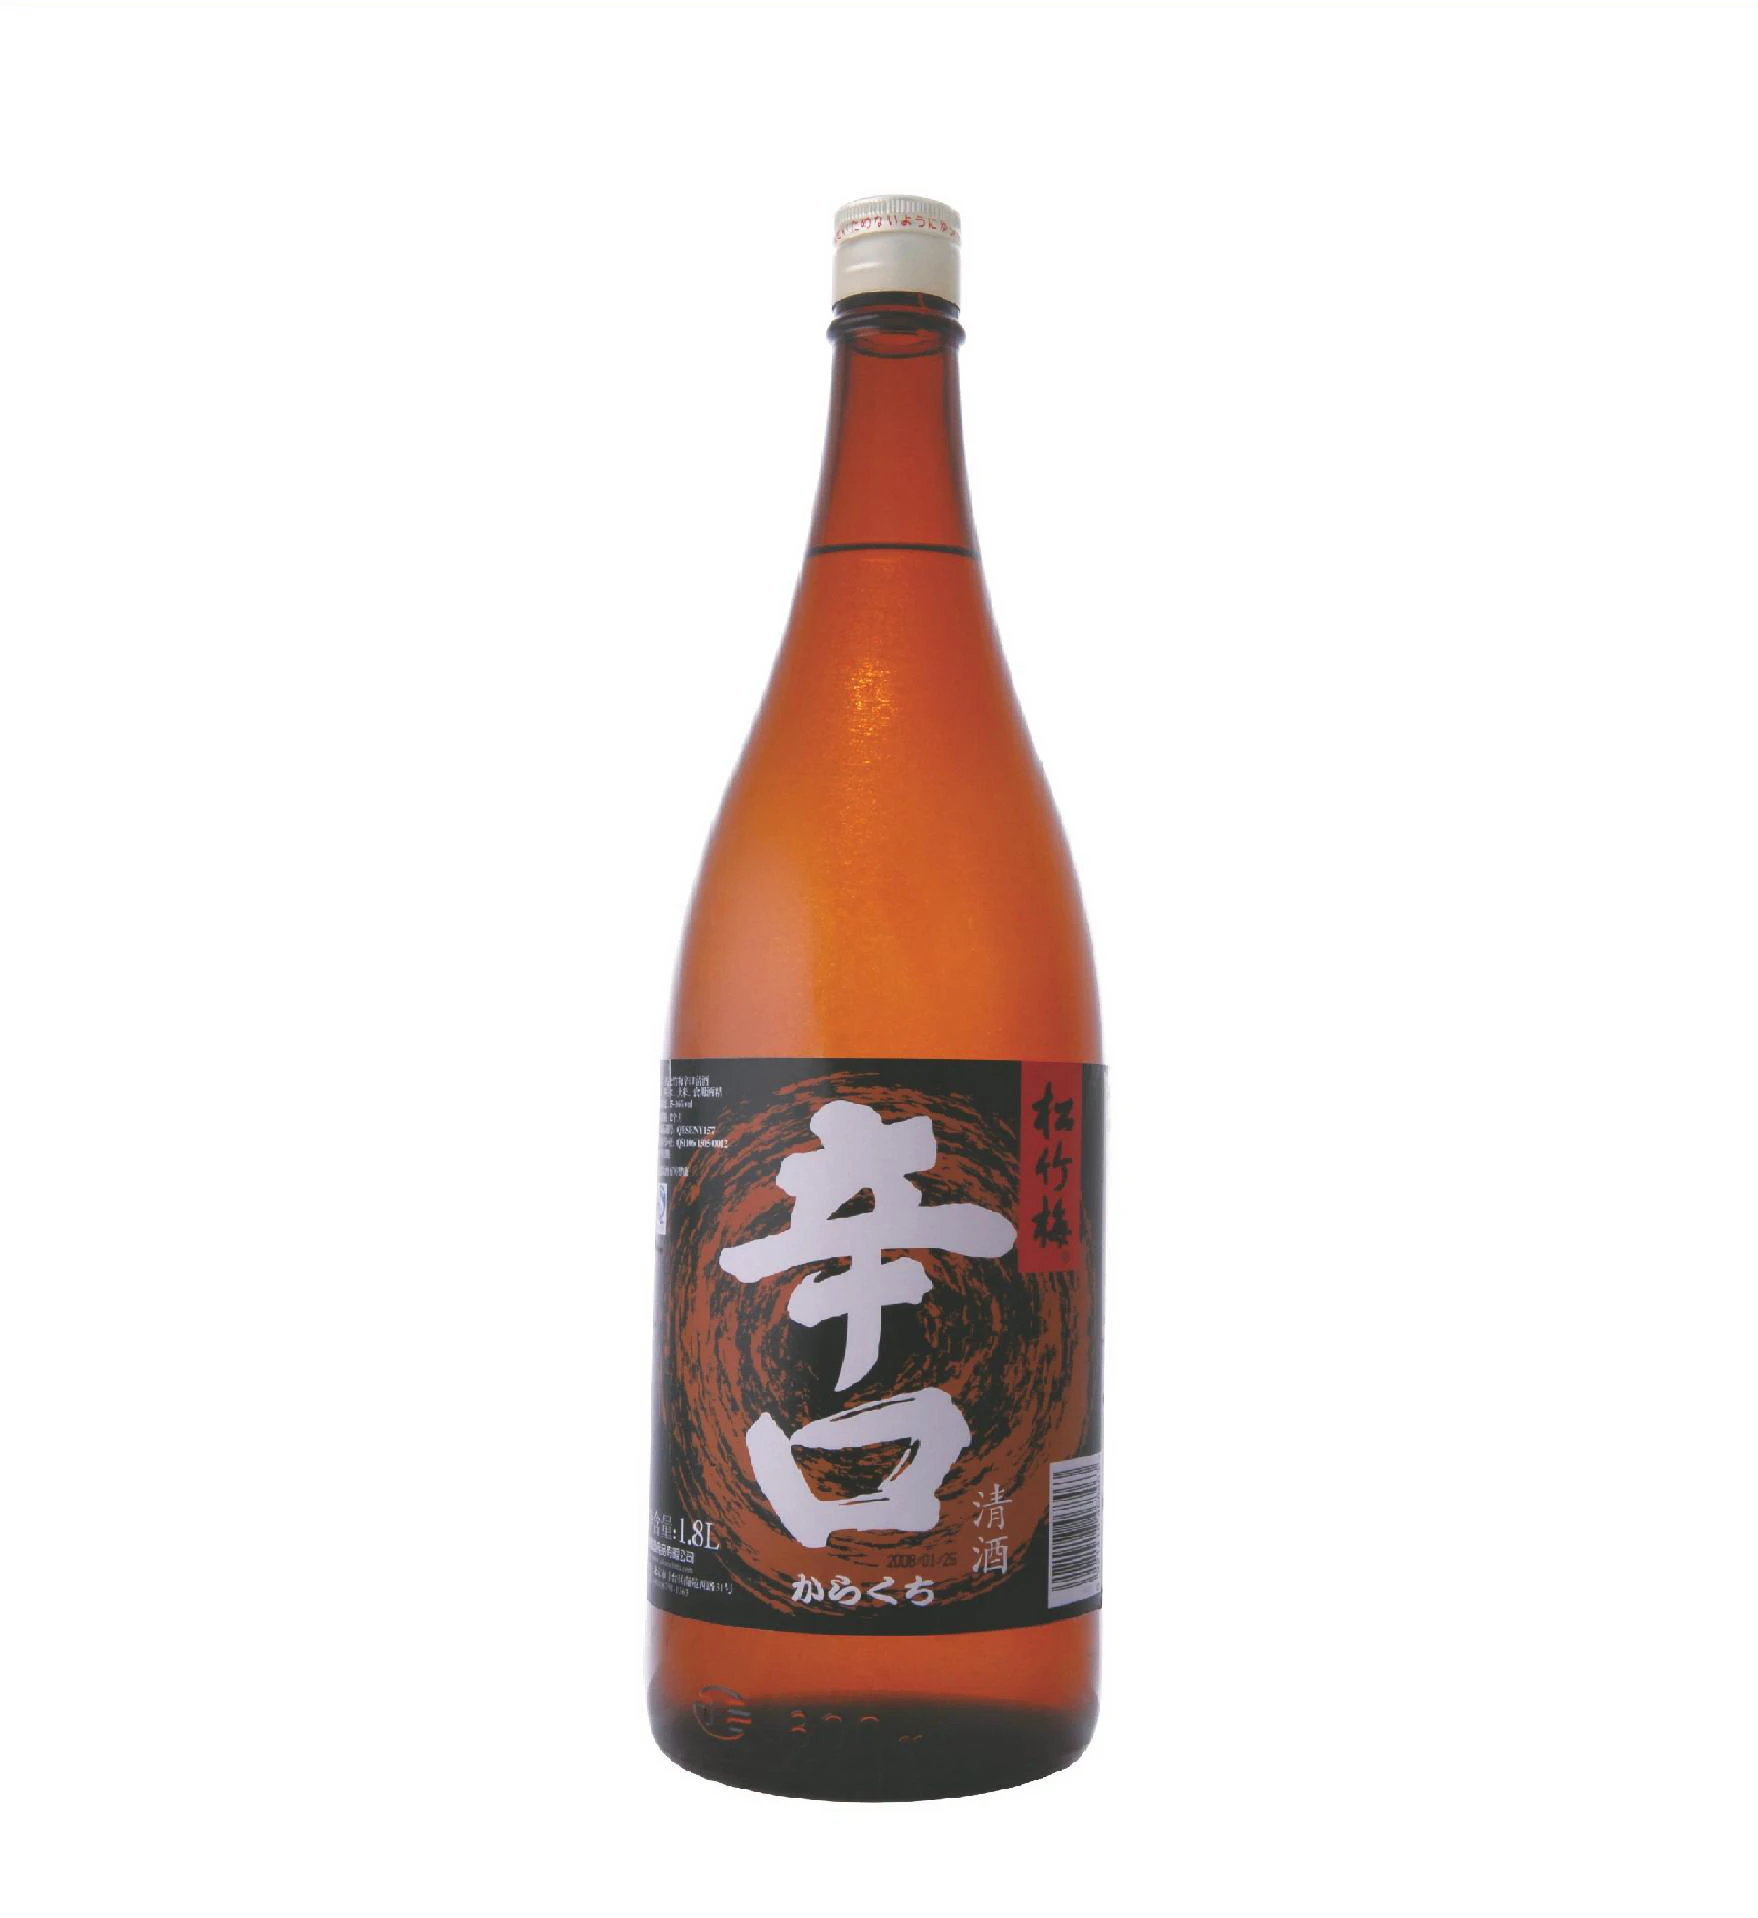 日本米酒- Buy 日本米酒,米酒,葡萄酒Product on Alibaba.com